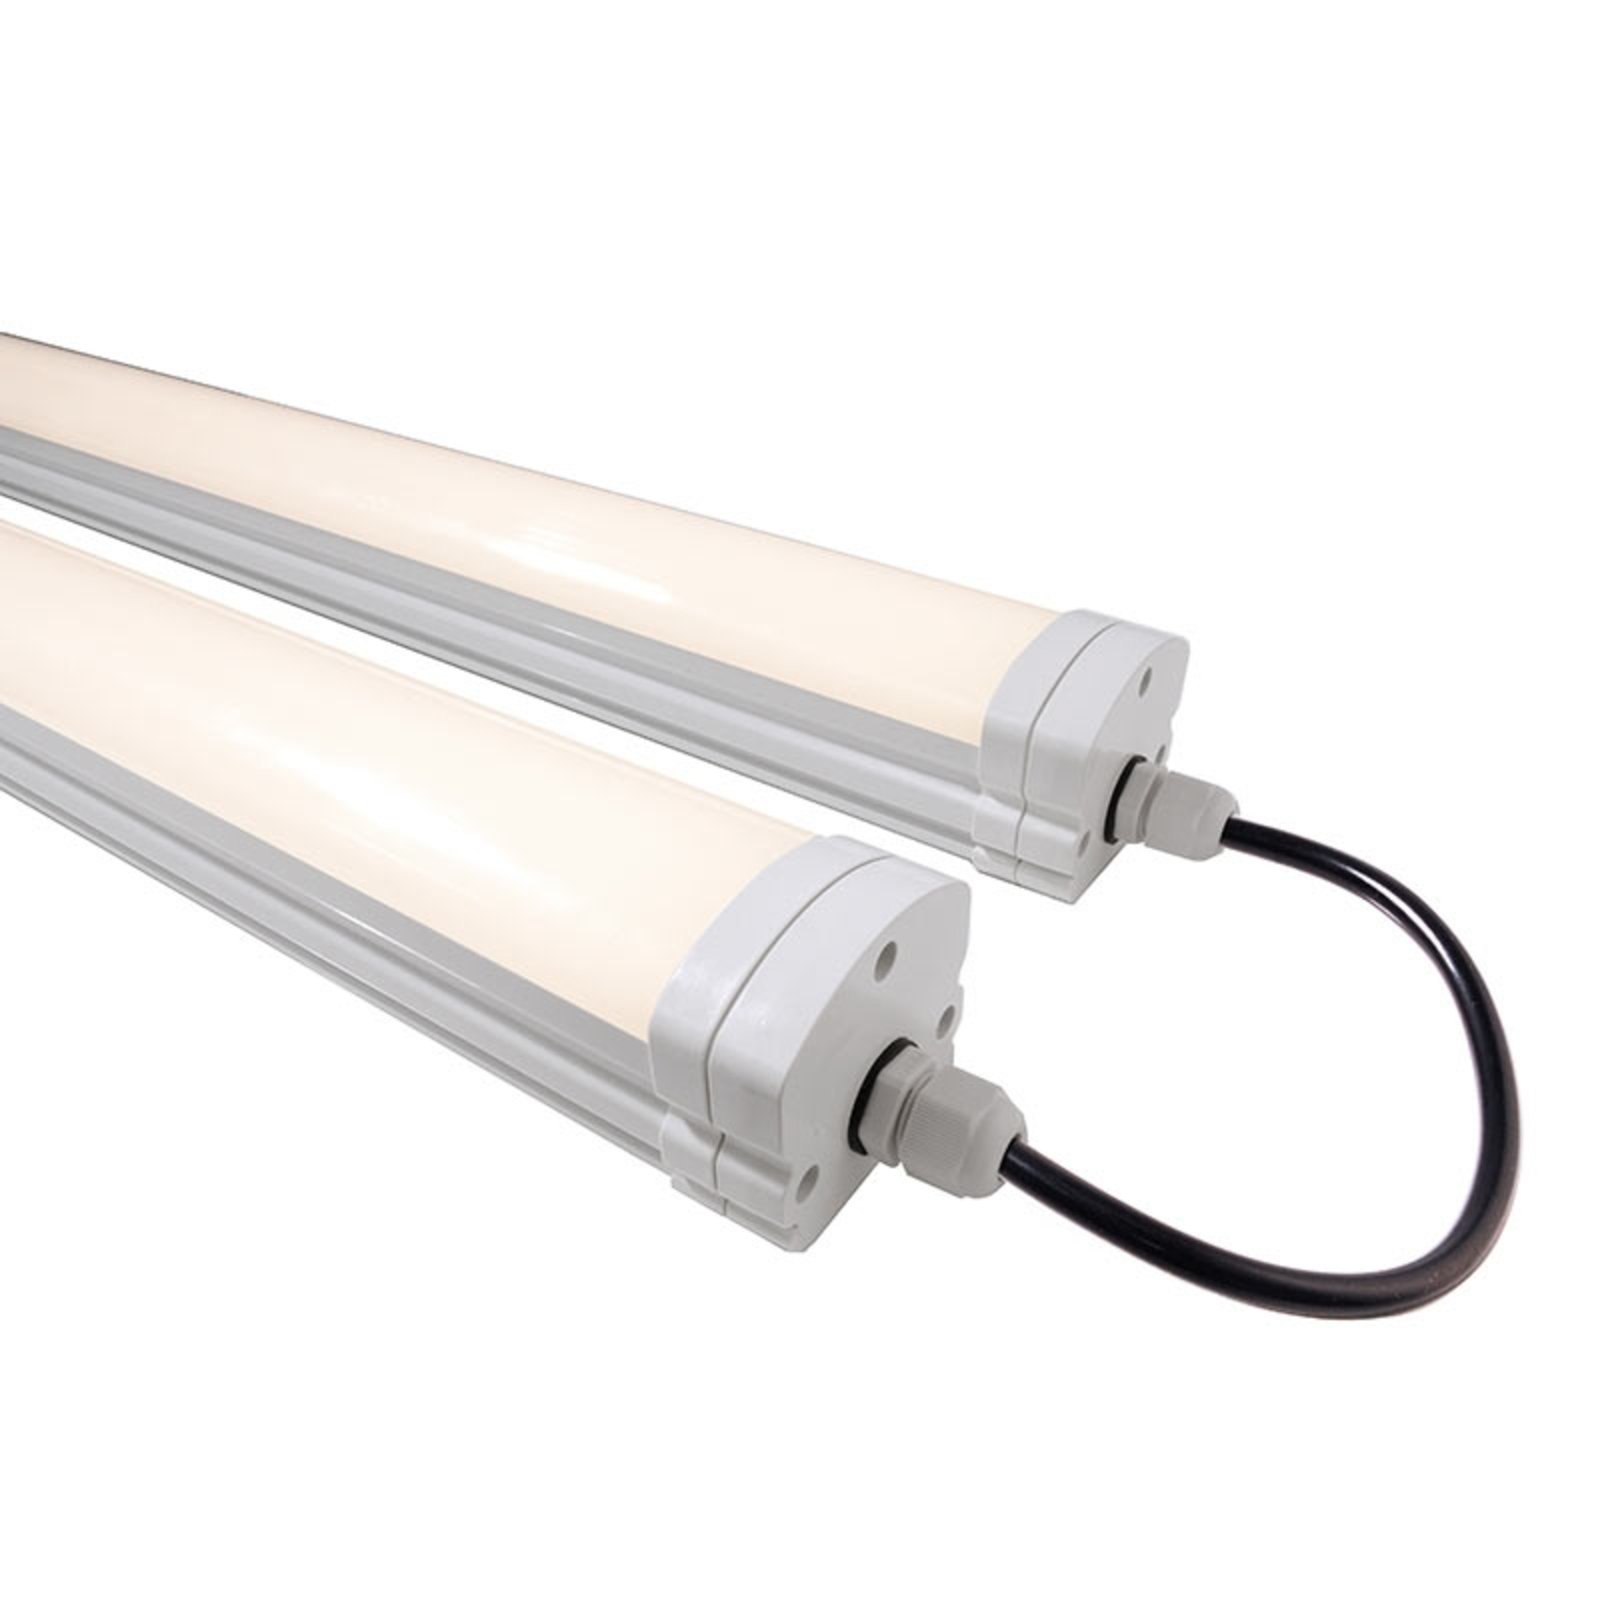 Long Tri Proof LED moisture-proof light 43.6 W